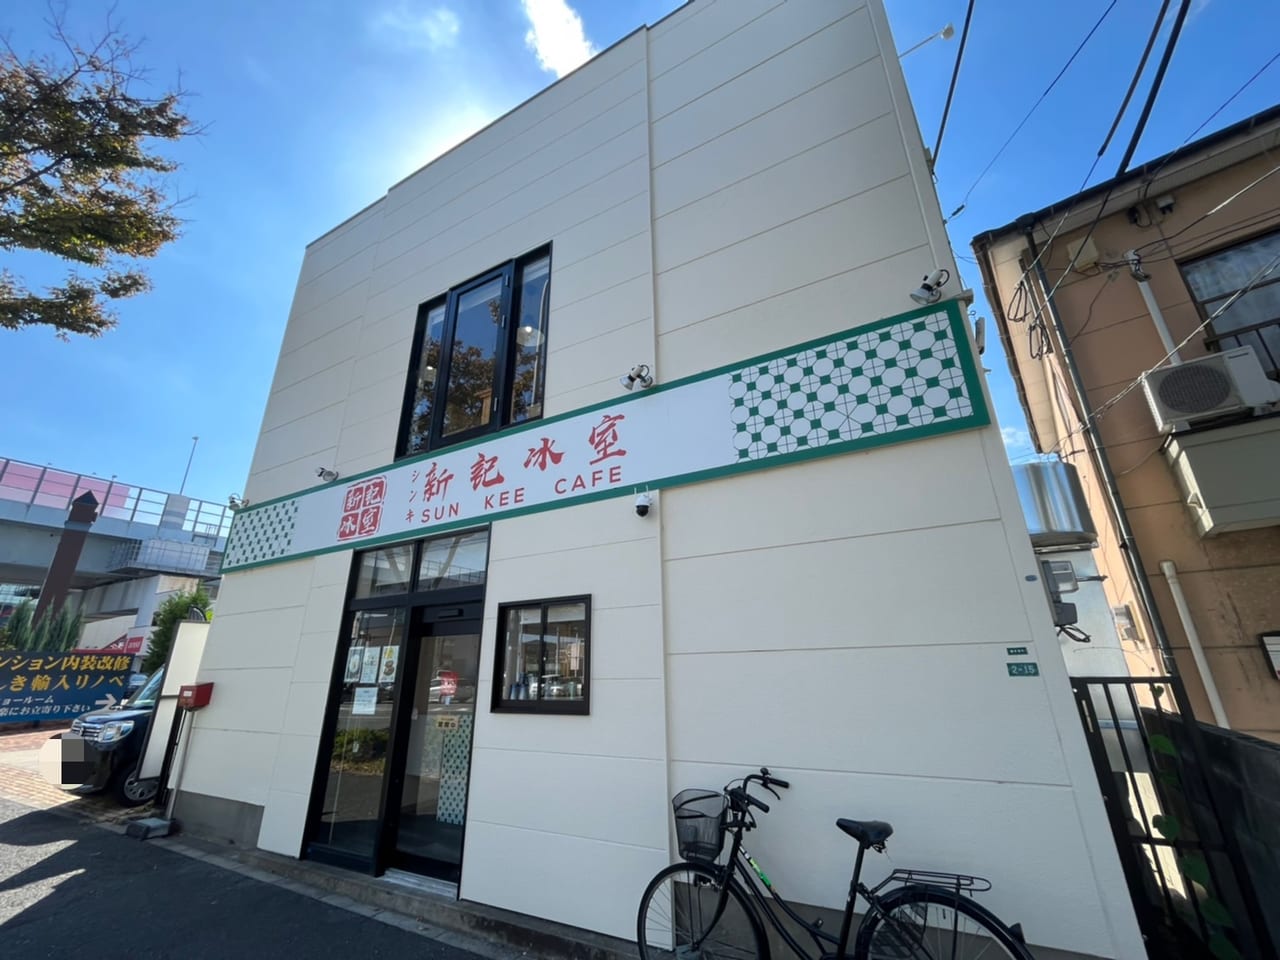 Sun Kee Cafe